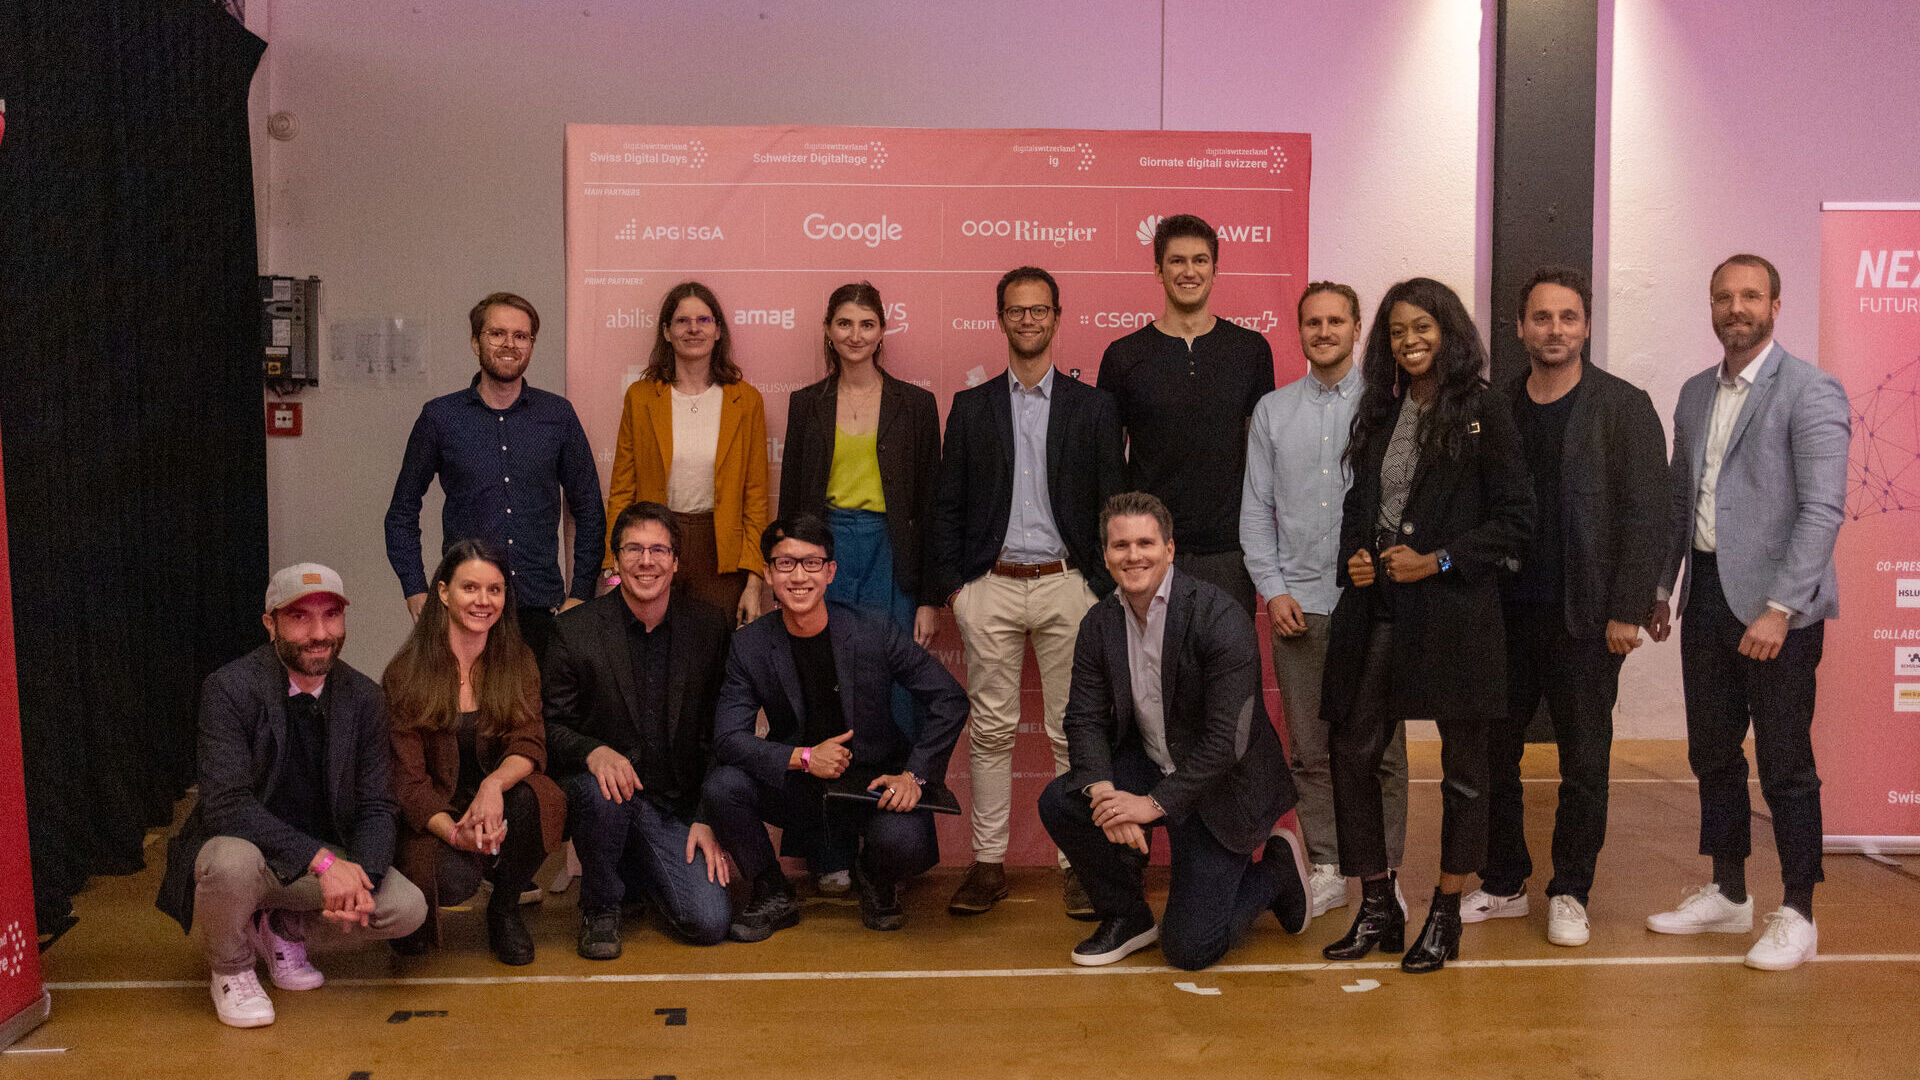 瑞士数字日：2022 月 27 日在楚格 (Zug) 的 Freiruum 举行的 XNUMX 年“瑞士数字日”最后一场活动：“Greentech Startup Battle”倡议的颁奖仪式，viboo 获胜